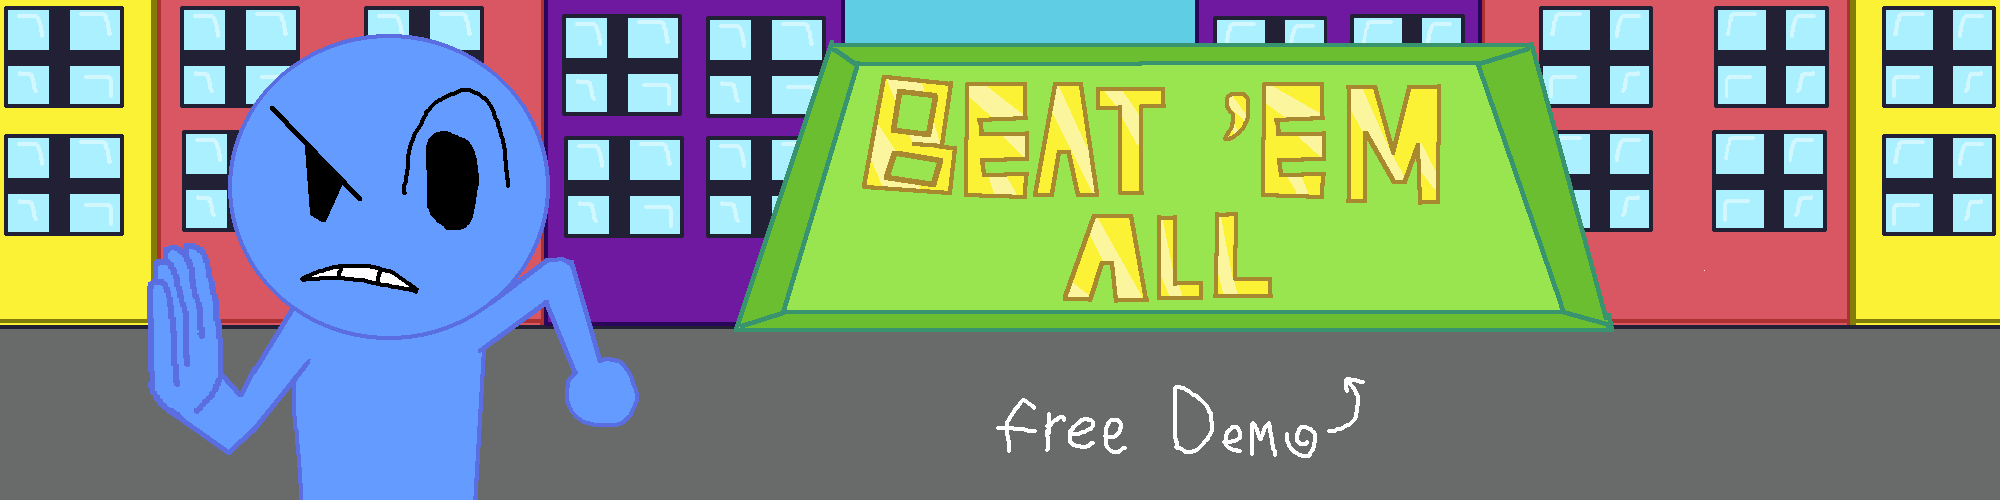 Beat 'em all - Demo